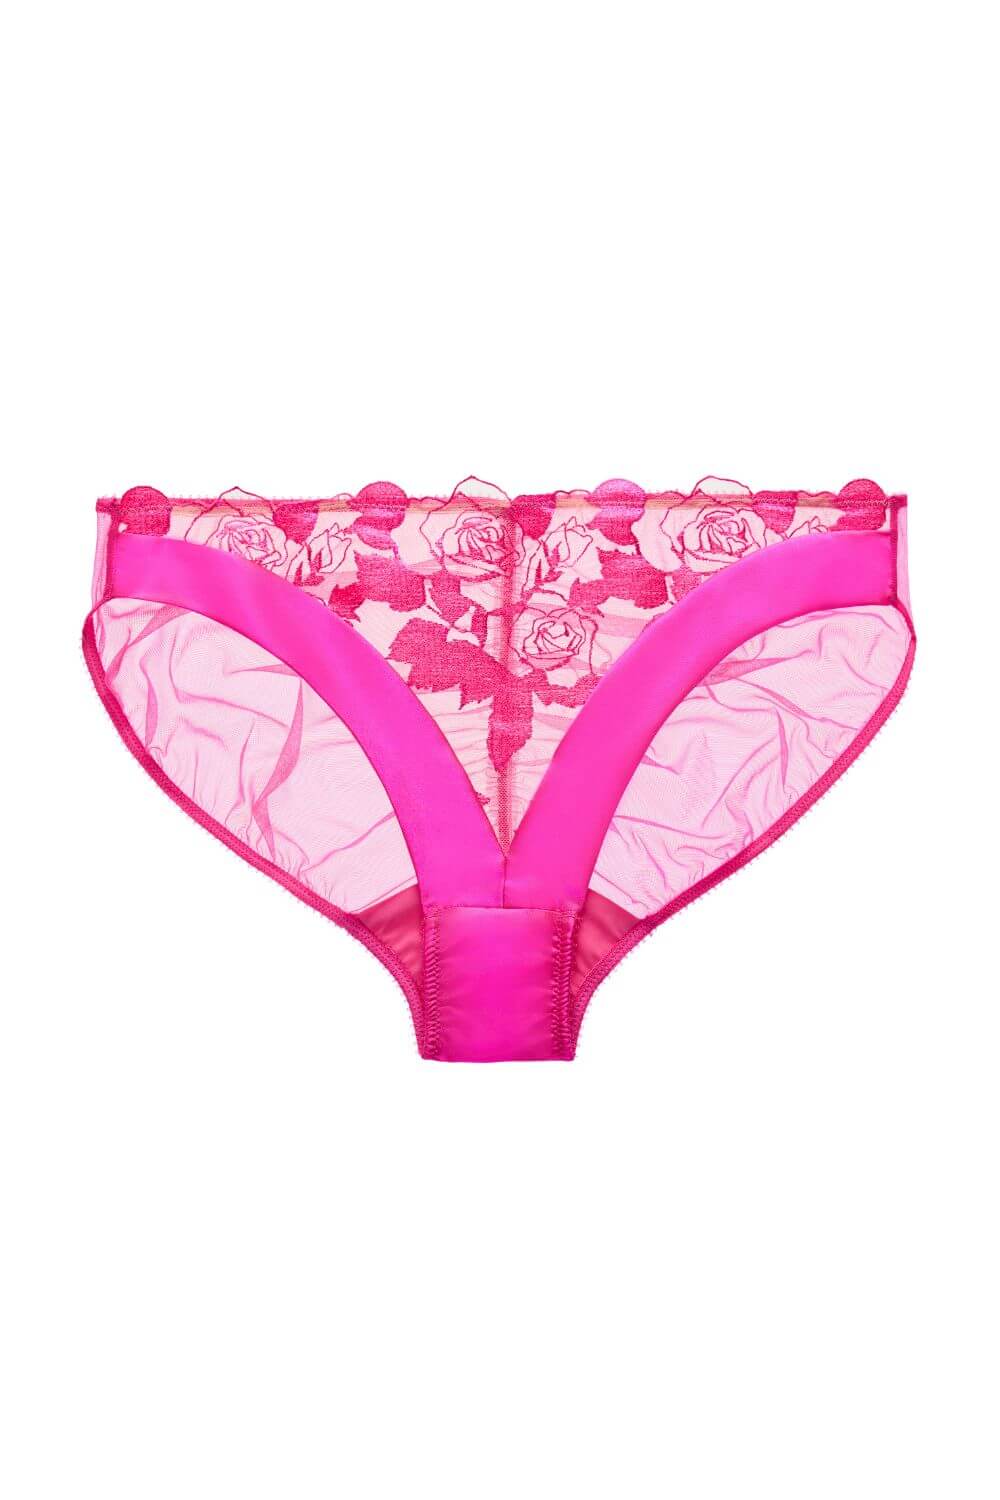 Rosabelle Sheer Bikini Panty Pink Pizazz-Dita Von Teese-Rebel Romance